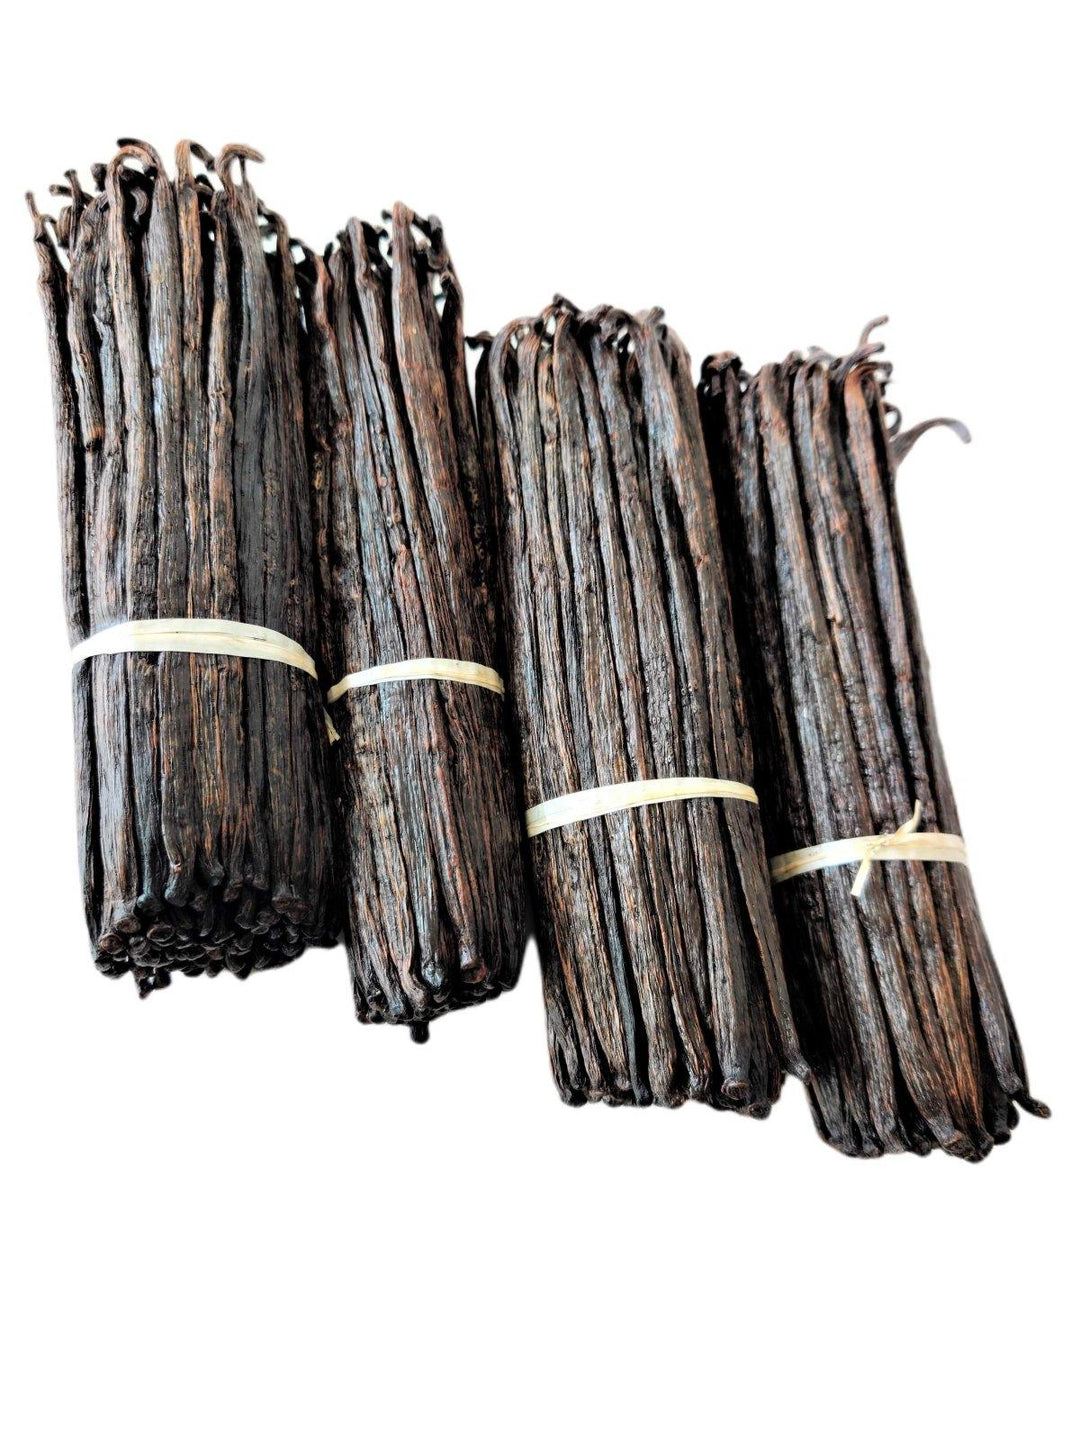 Extrait de Bourbon de Madagascar Gousses de Vanille Grade-B<br> Pour la fabrication d'extraits<br> 1/4 livre, 1/2 livre, 1 livre, 2 livres 